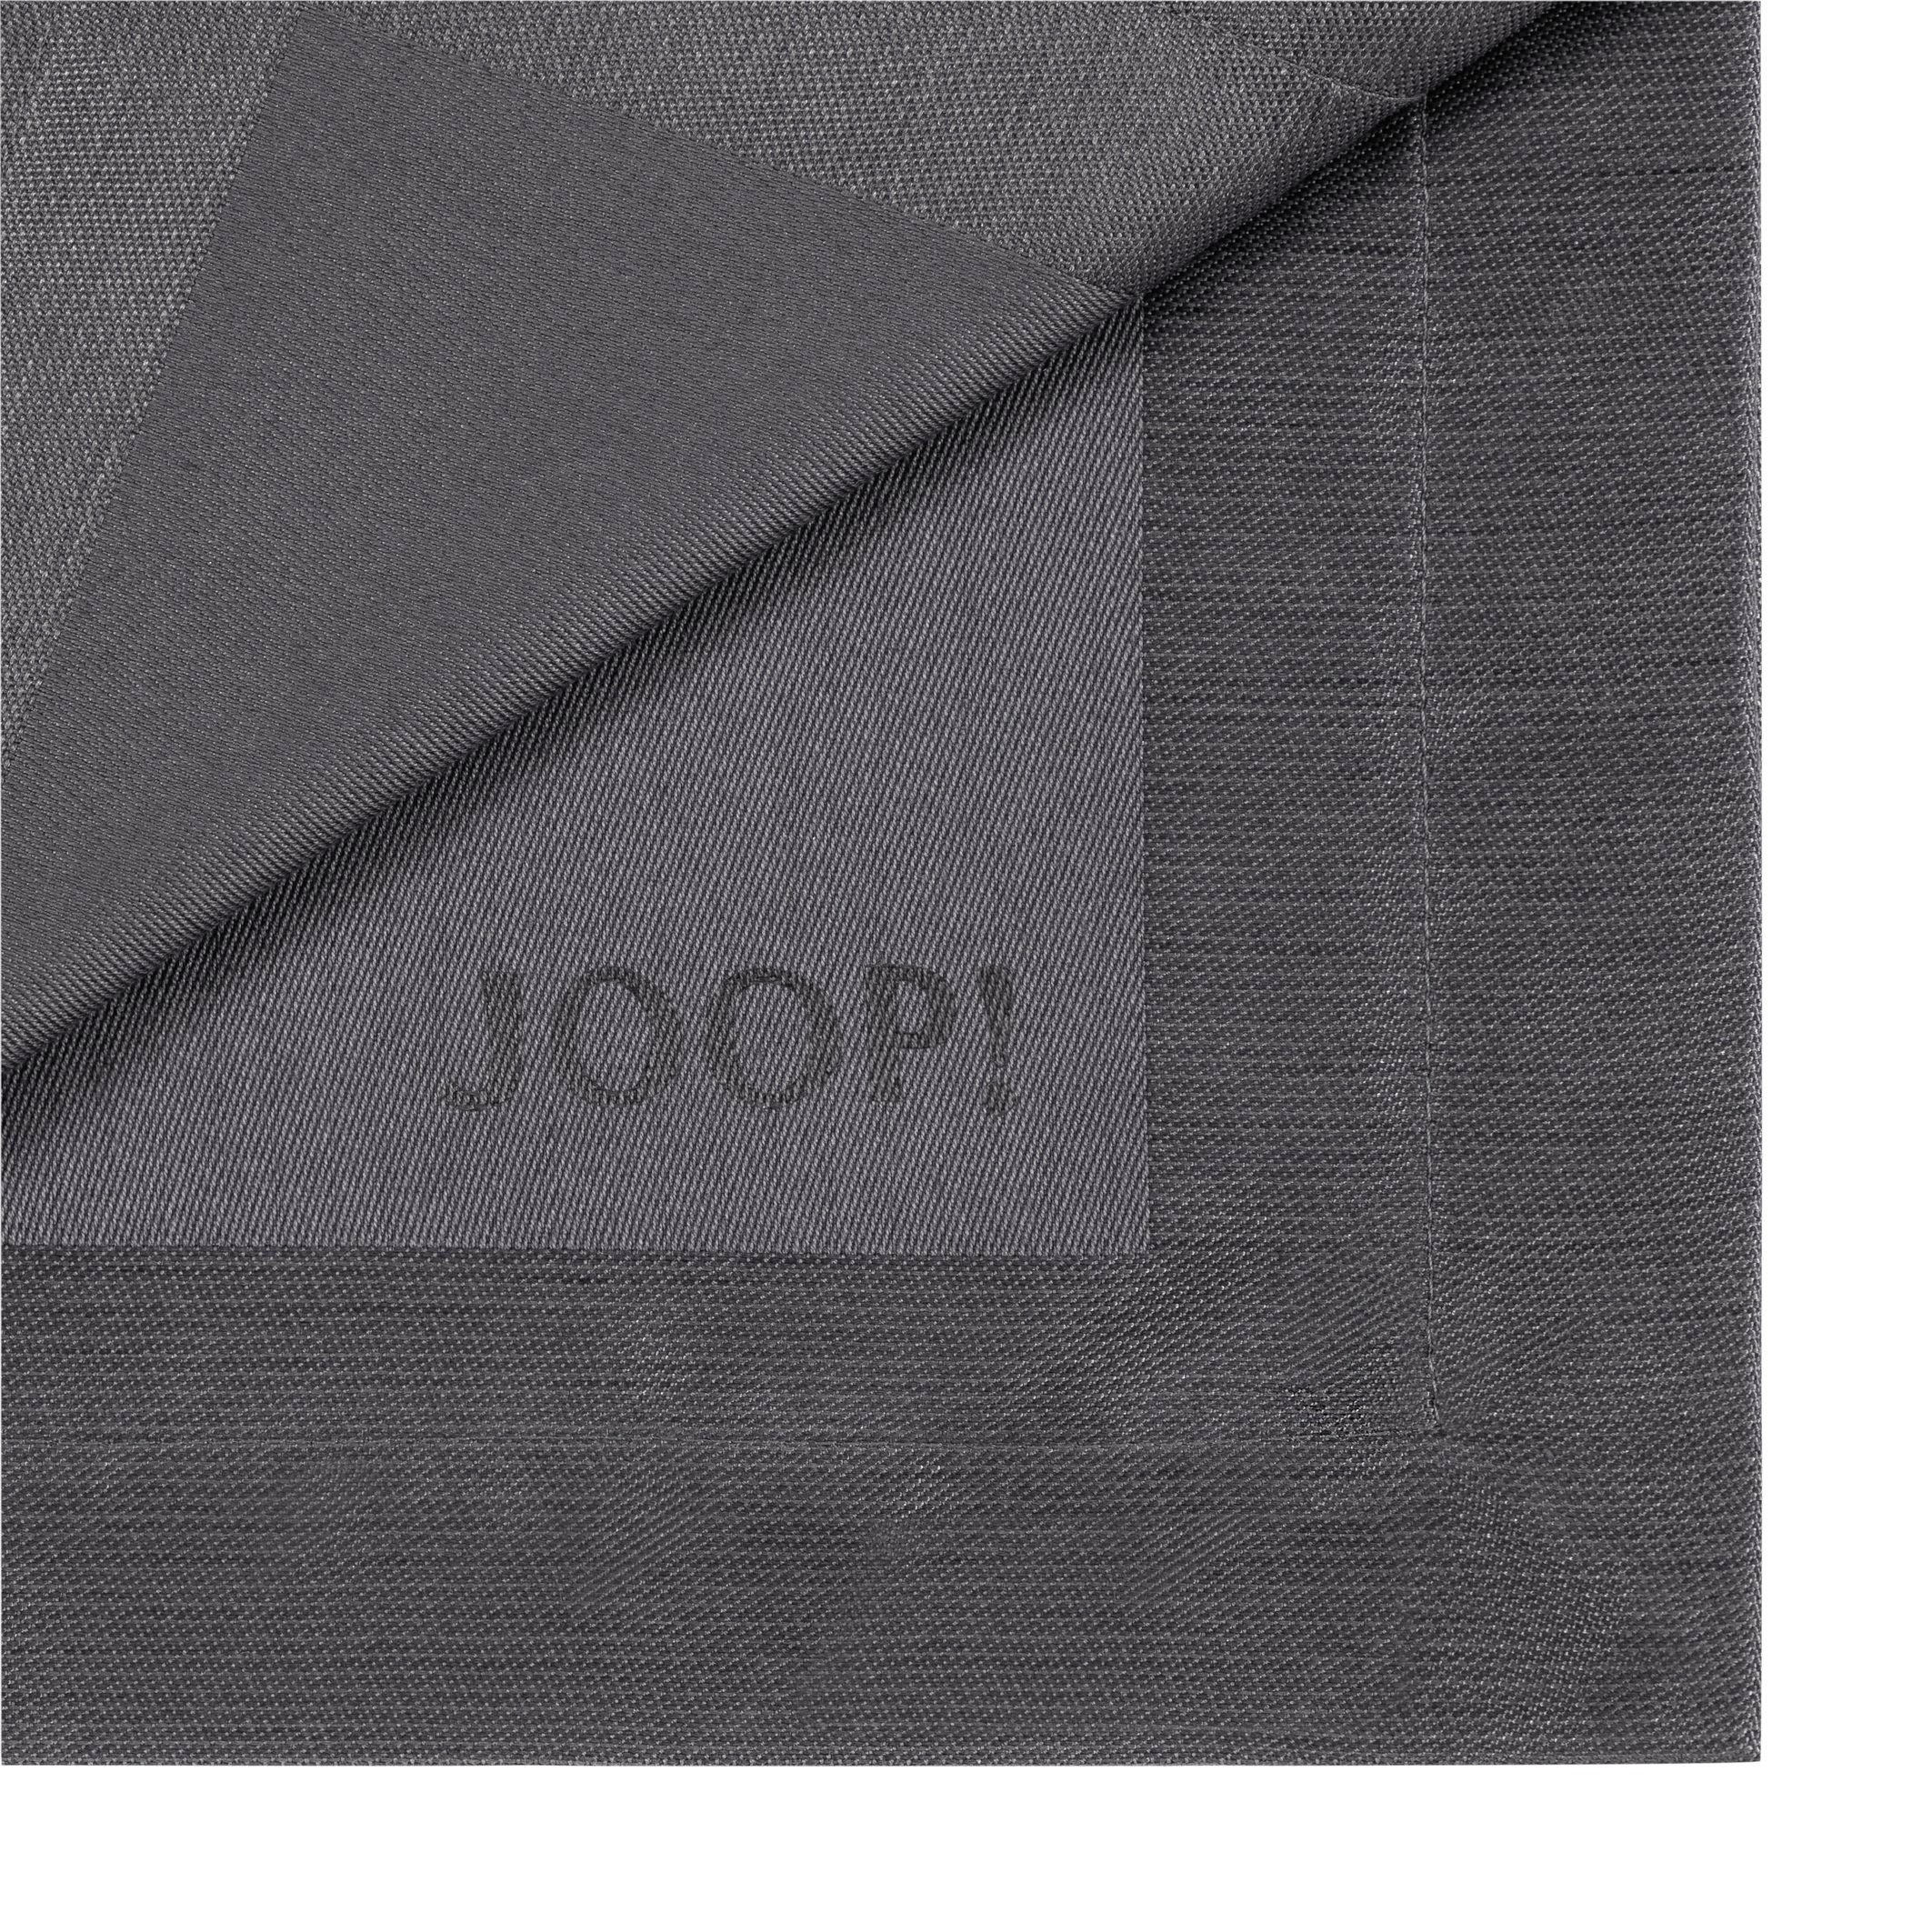 SERVIETTE 2ER-SET 50/50 cm   - Graphitfarben, Design, Textil (50/50cm) - Joop!